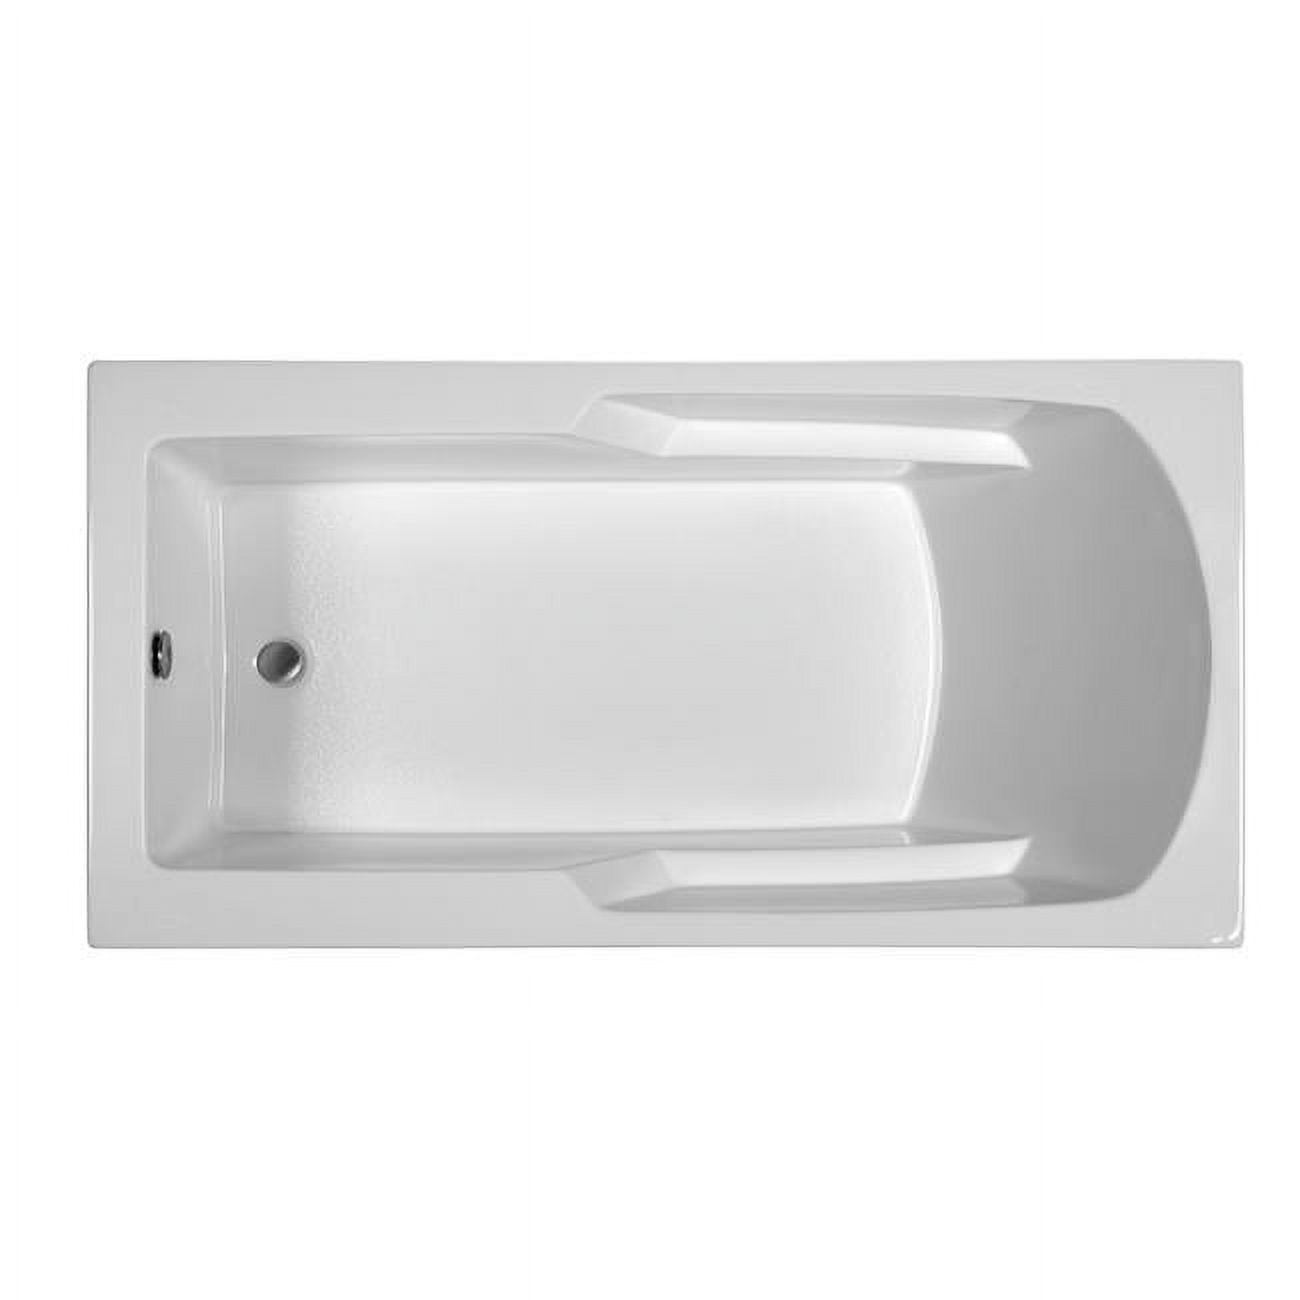 Rectangular End Drain Air Bath, White - 65.75 x 33.75 x 19.5 in. - image 1 of 1